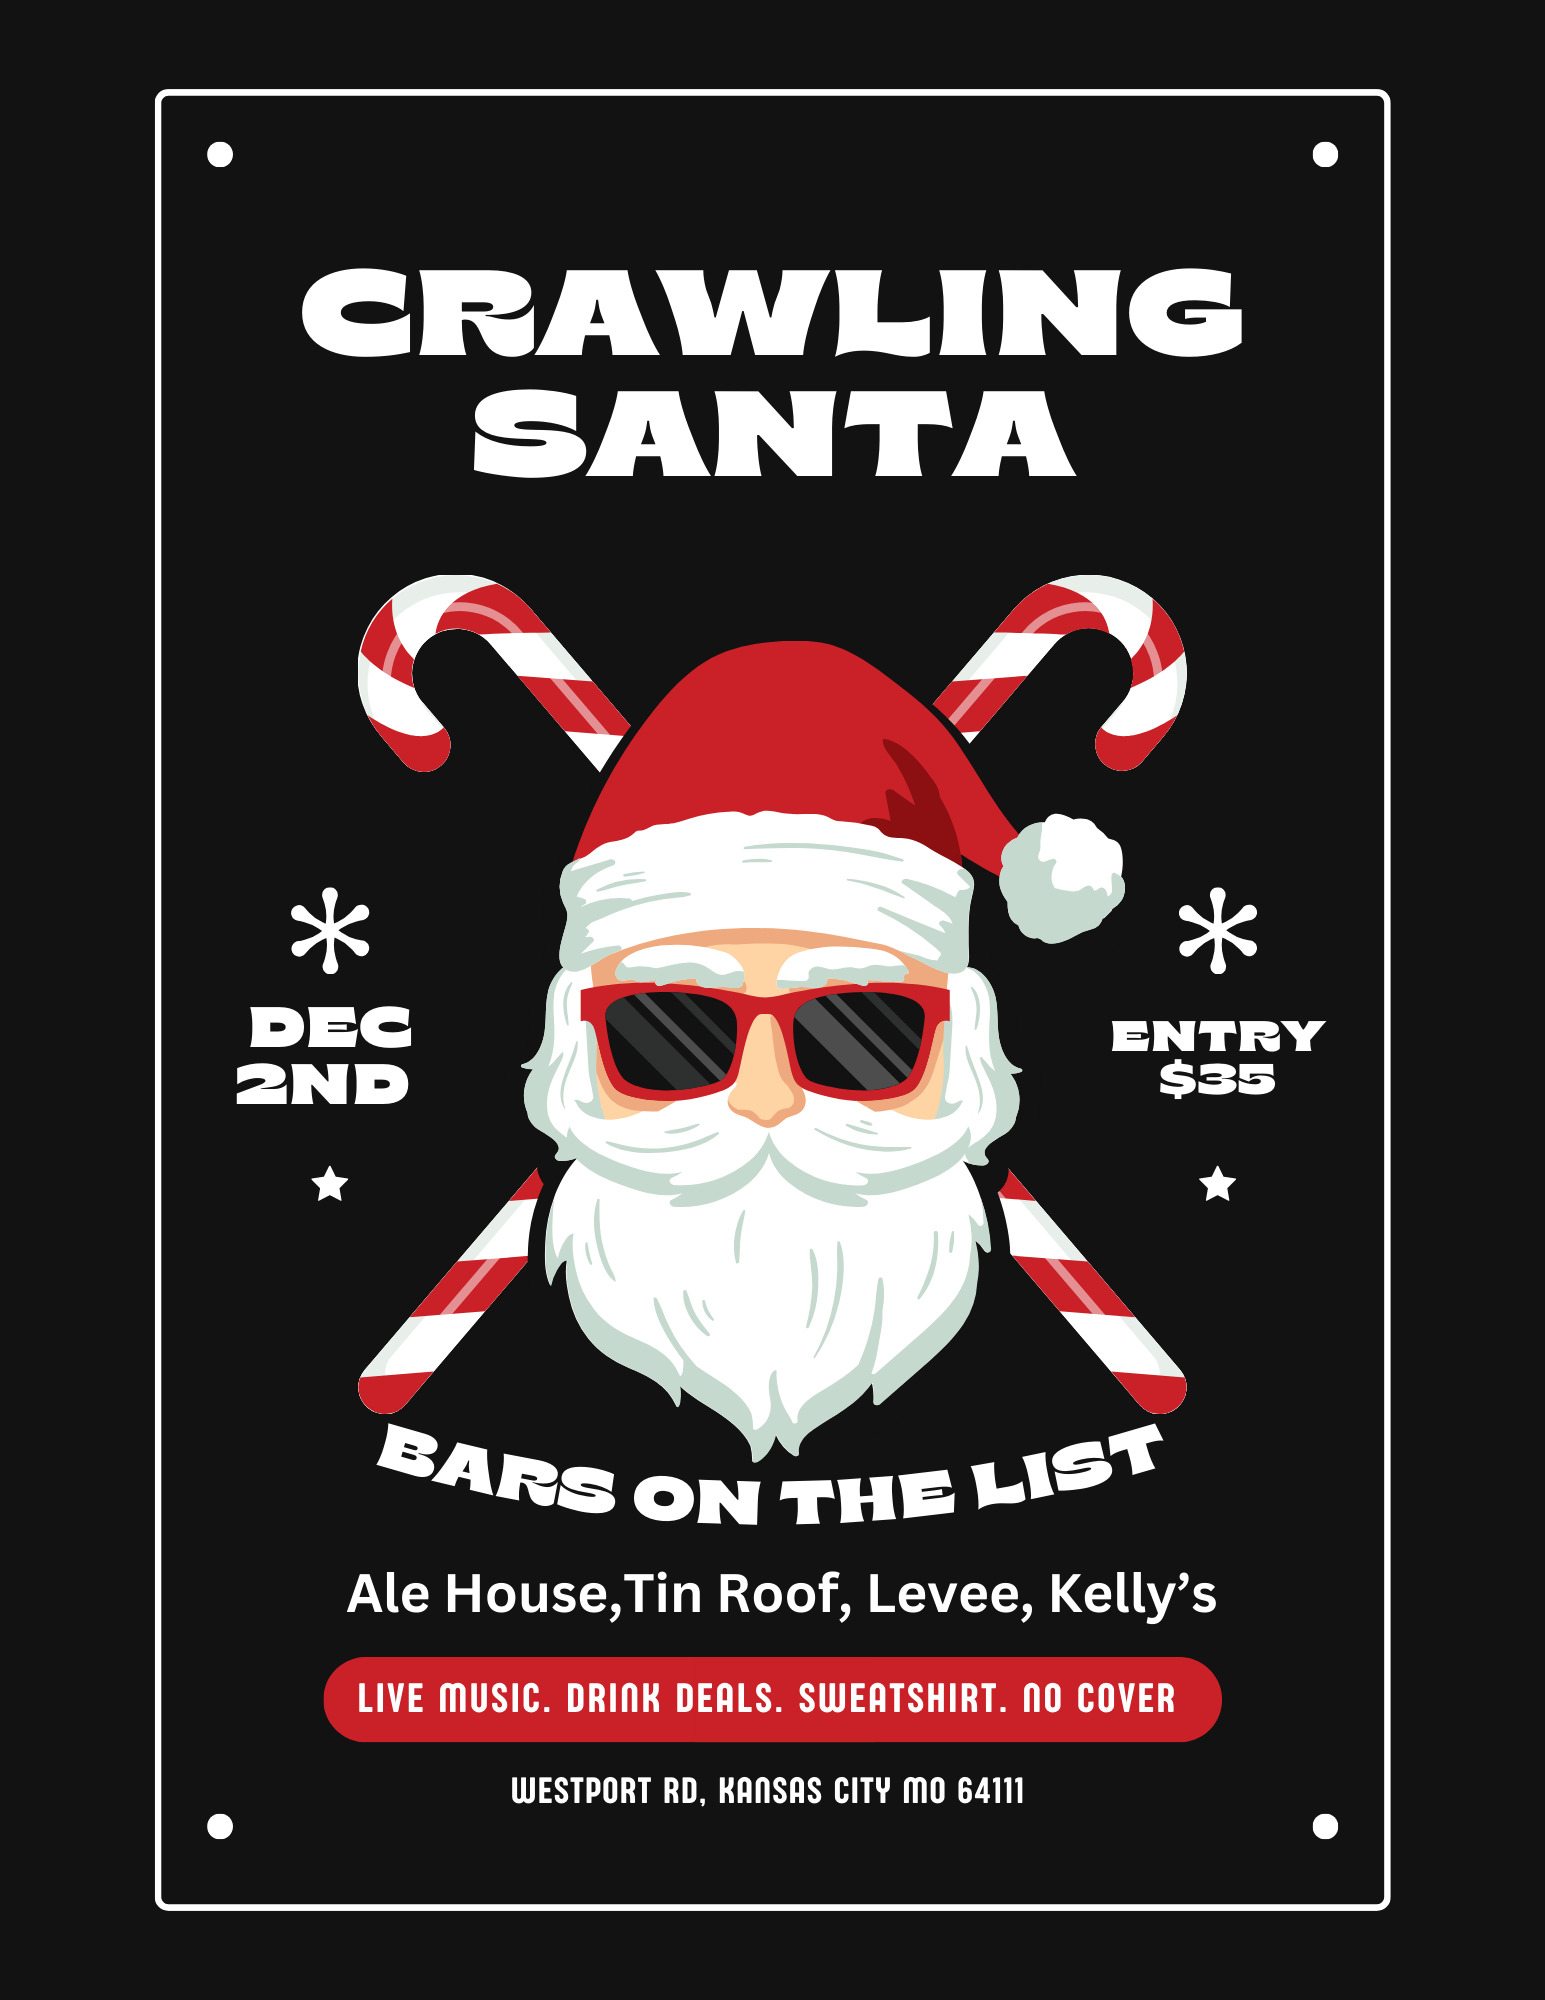 Crawling Santa Charity Bar Crawl image